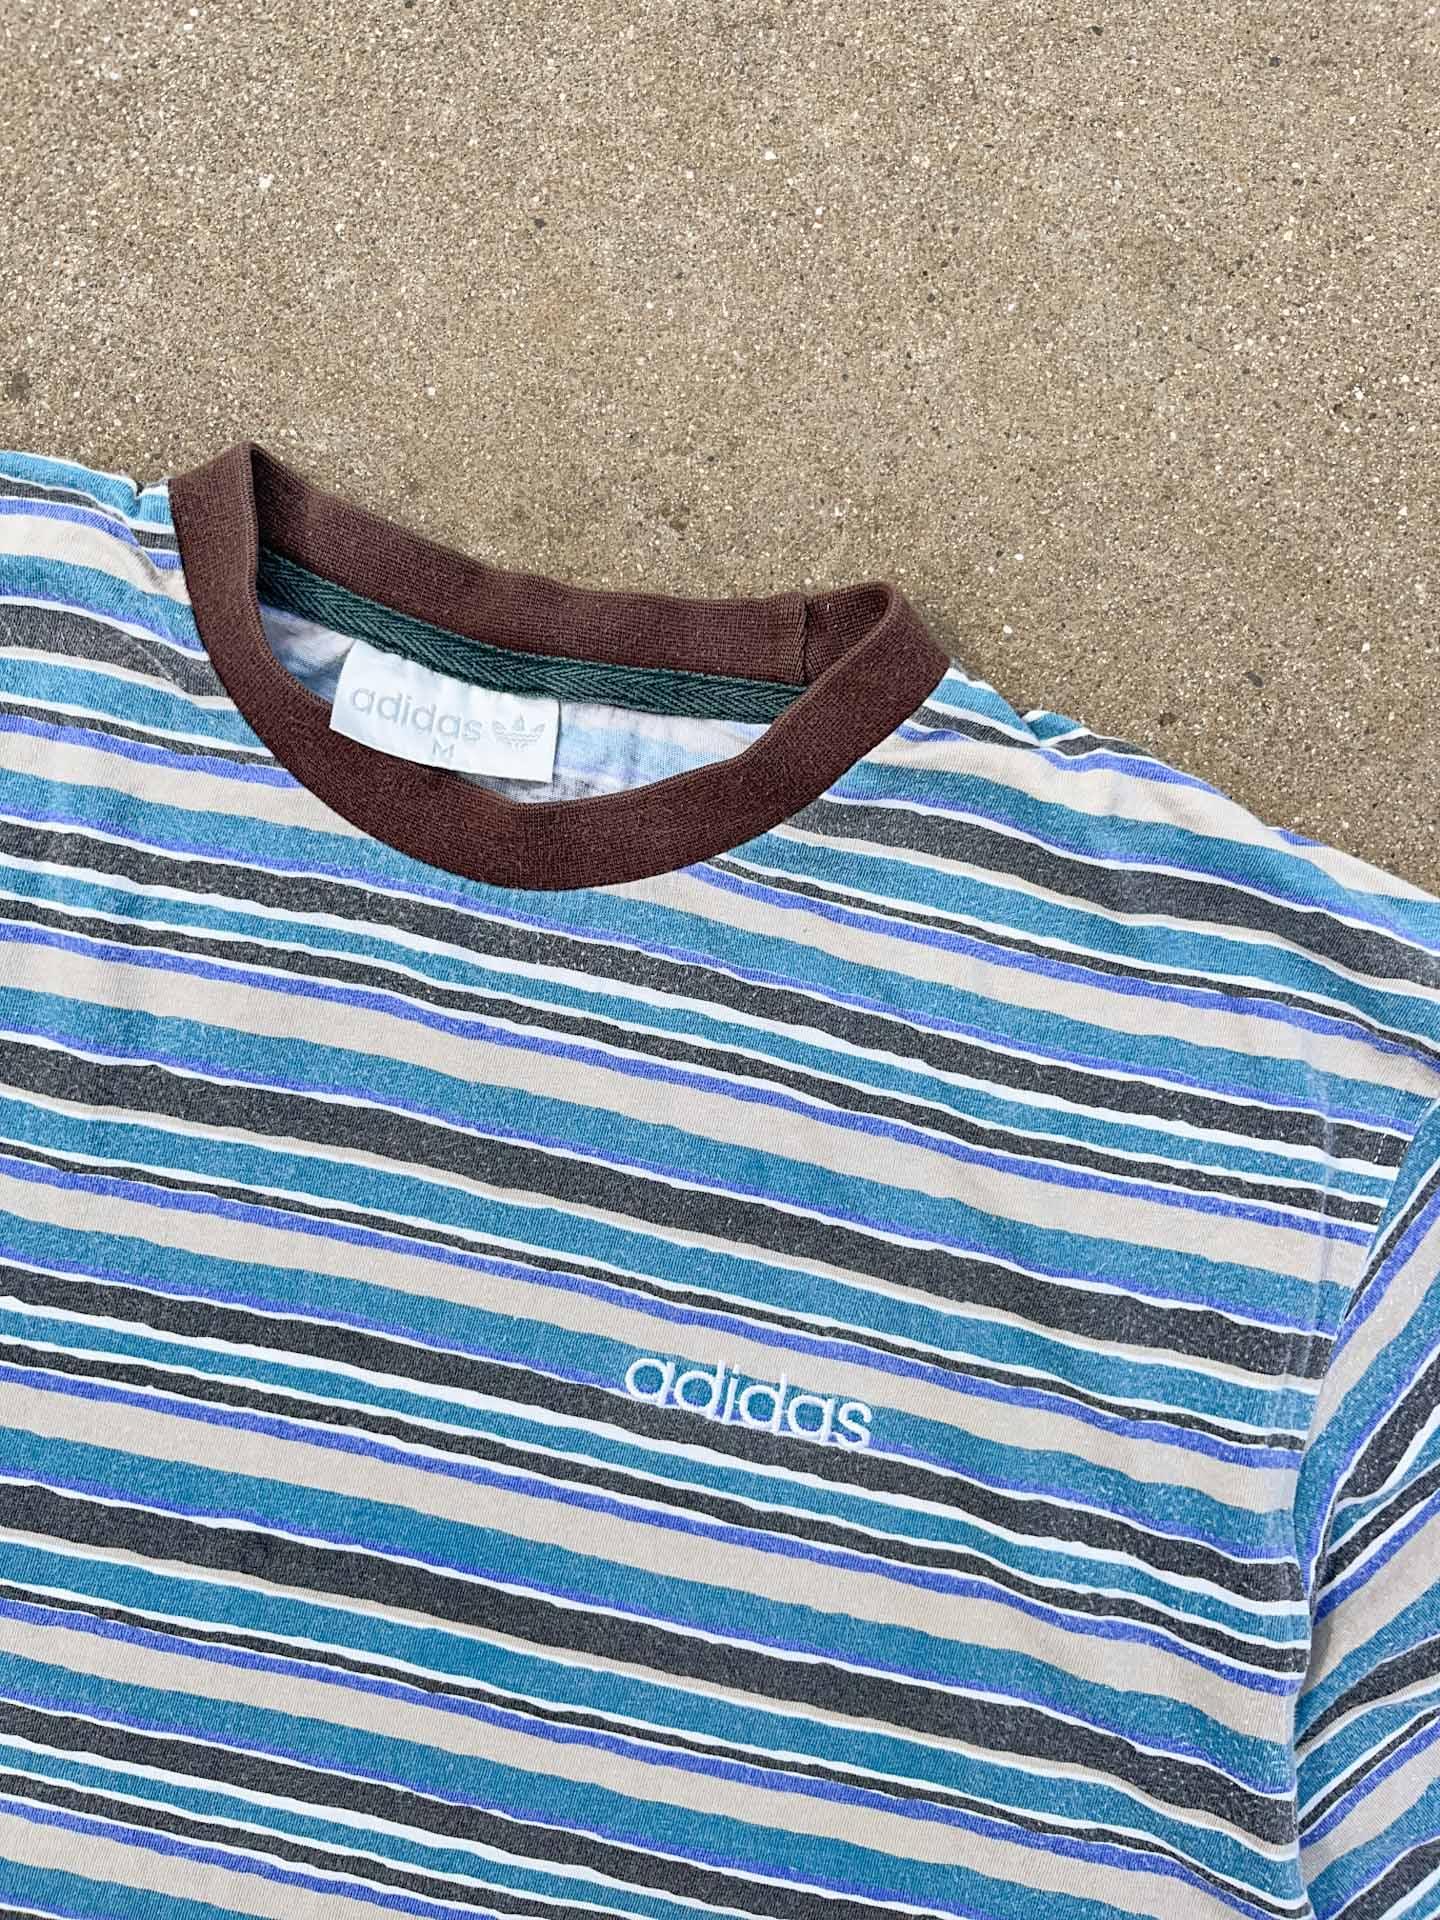 Vintage Stripes Shirt - secondvintage